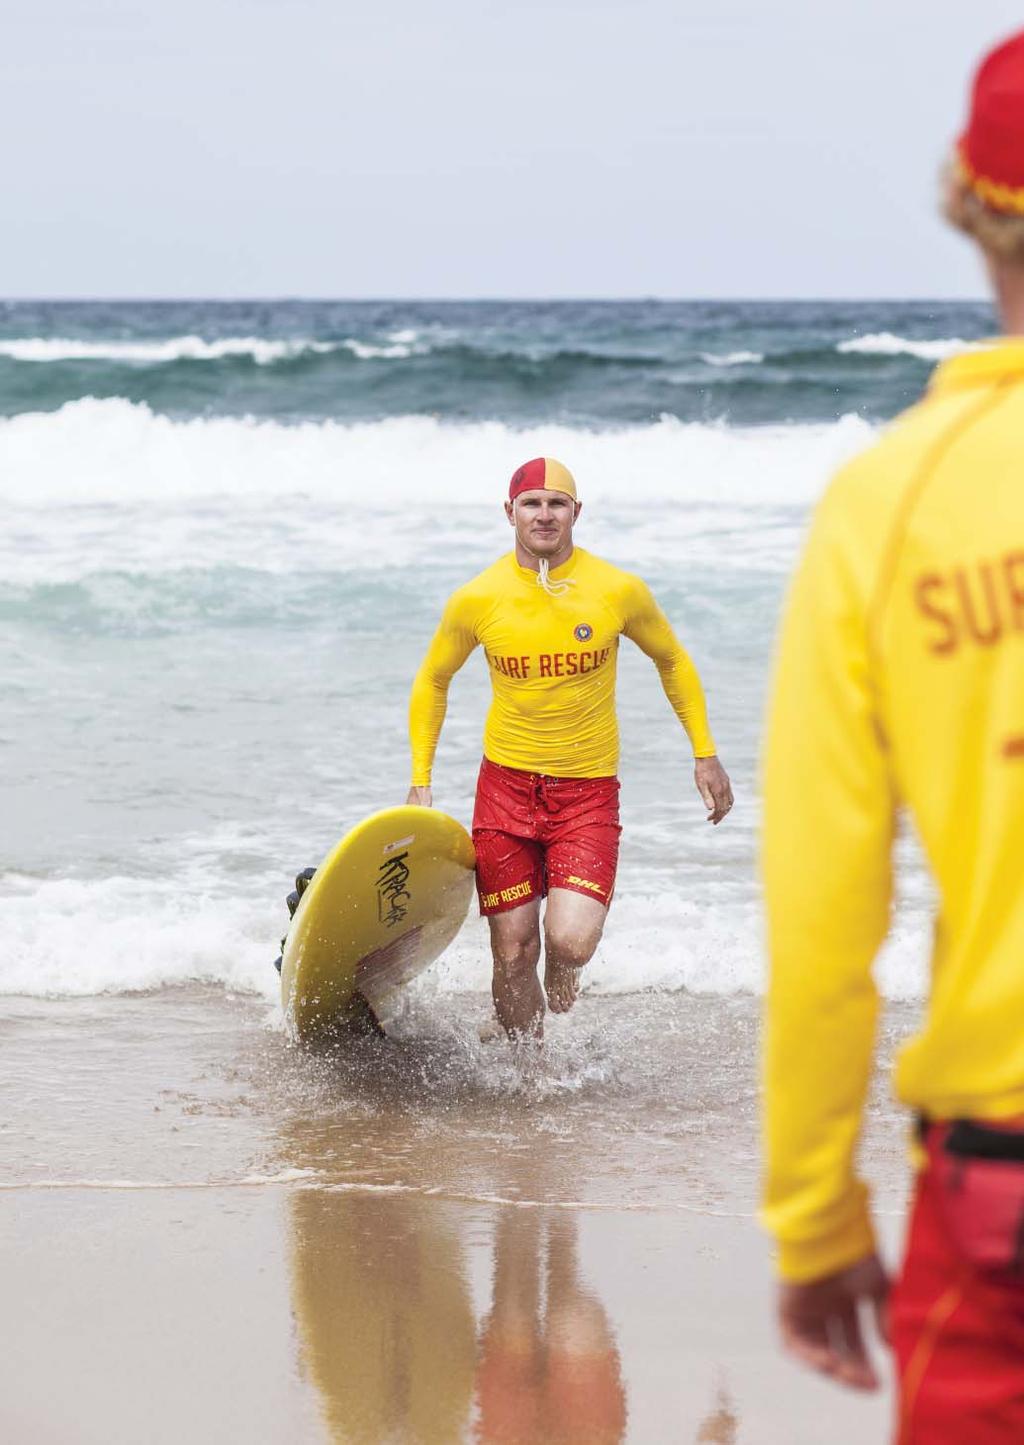 THE SURF LIFE SAVING